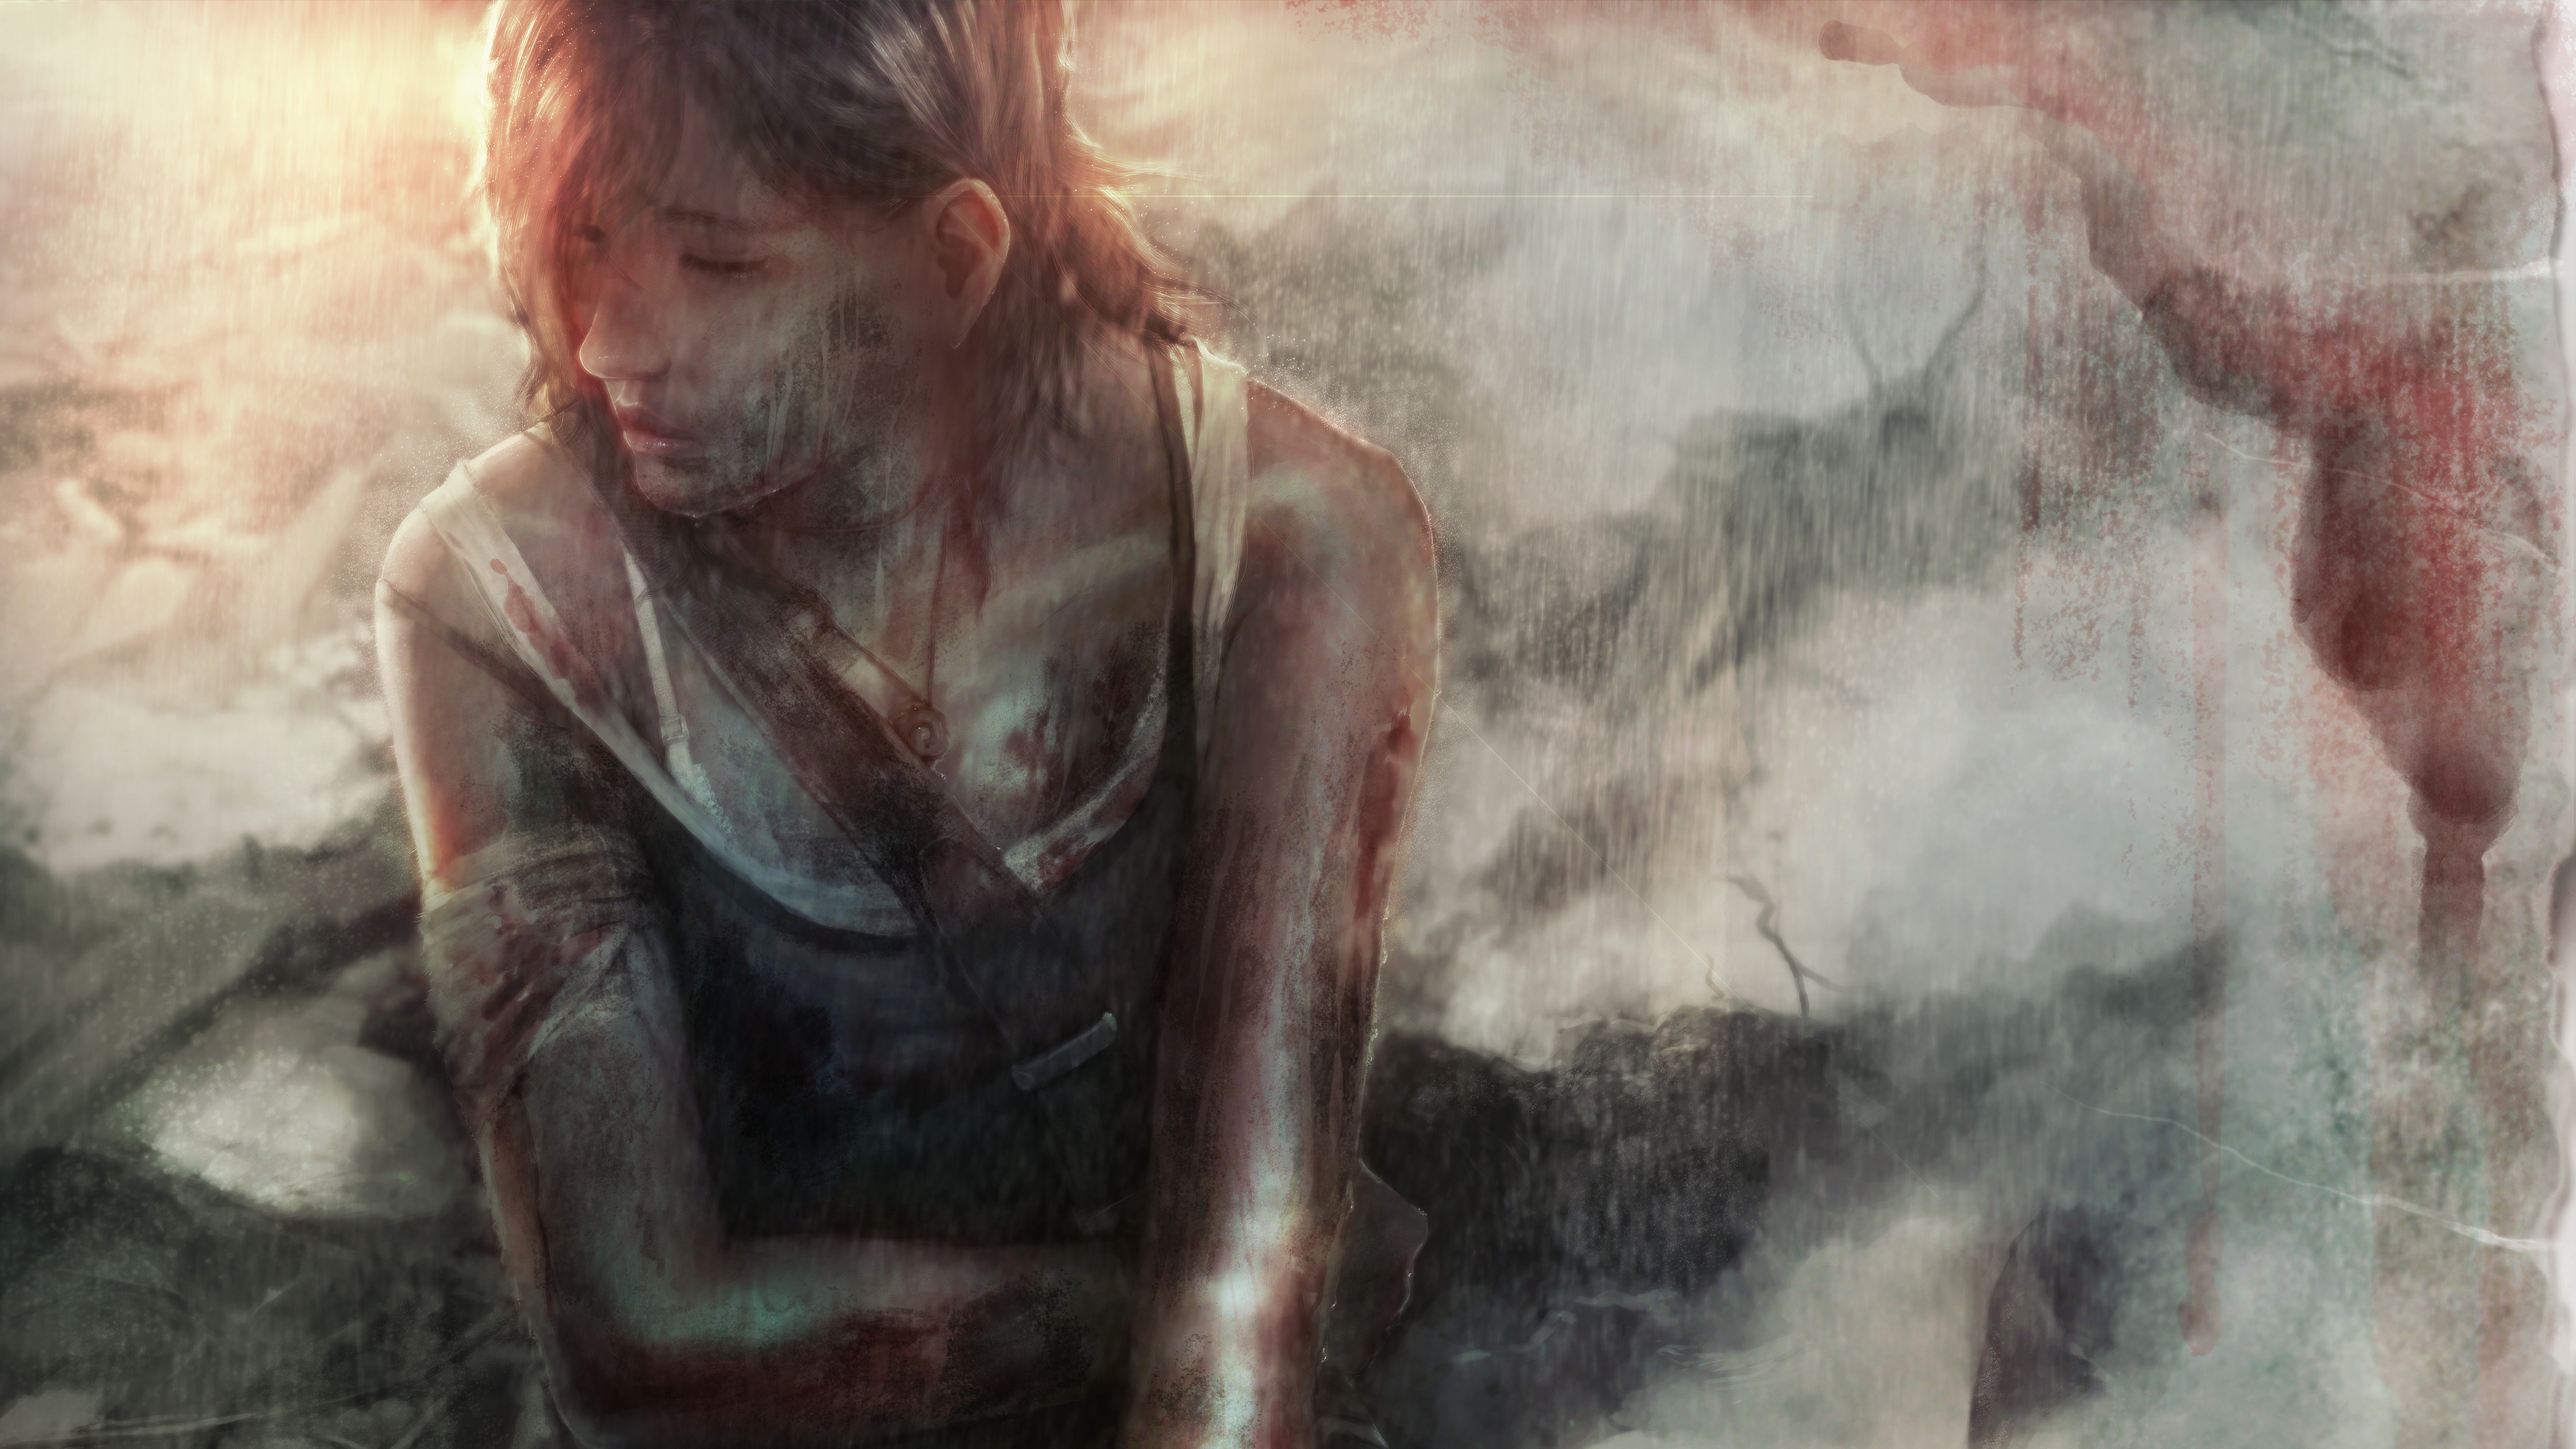 Descarga gratuita de fondo de pantalla para móvil de Tomb Raider, Lara Croft, Videojuego.